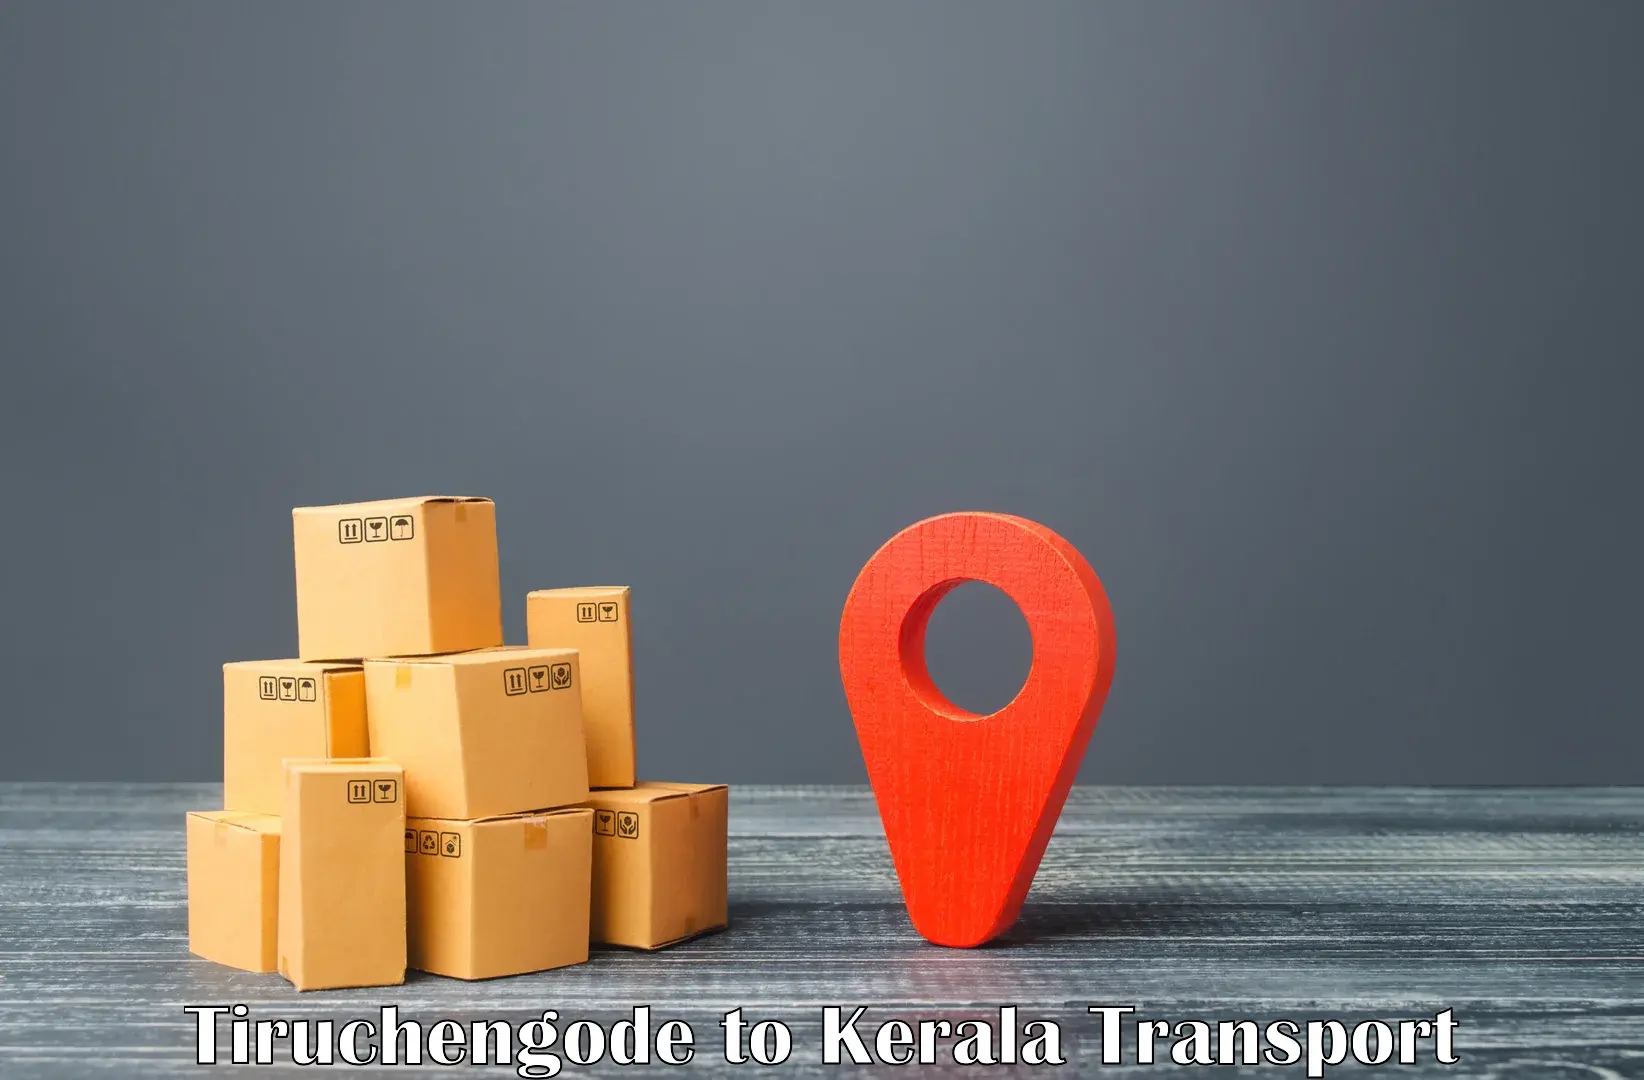 Express transport services Tiruchengode to Kothamangalam